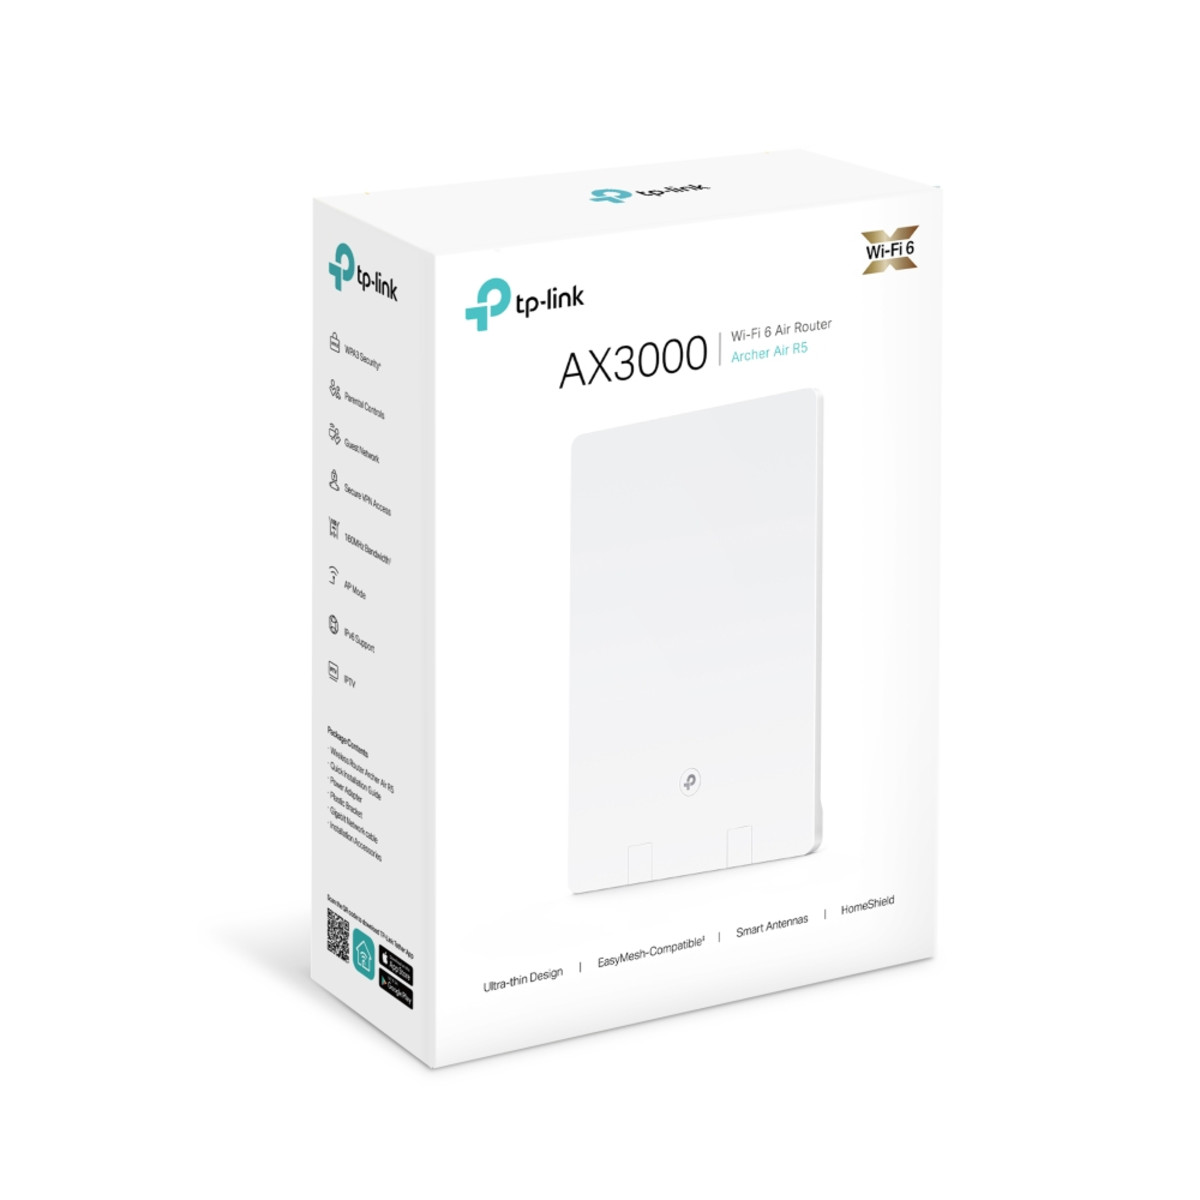 AX3000 Wi-Fi 6 Air Router